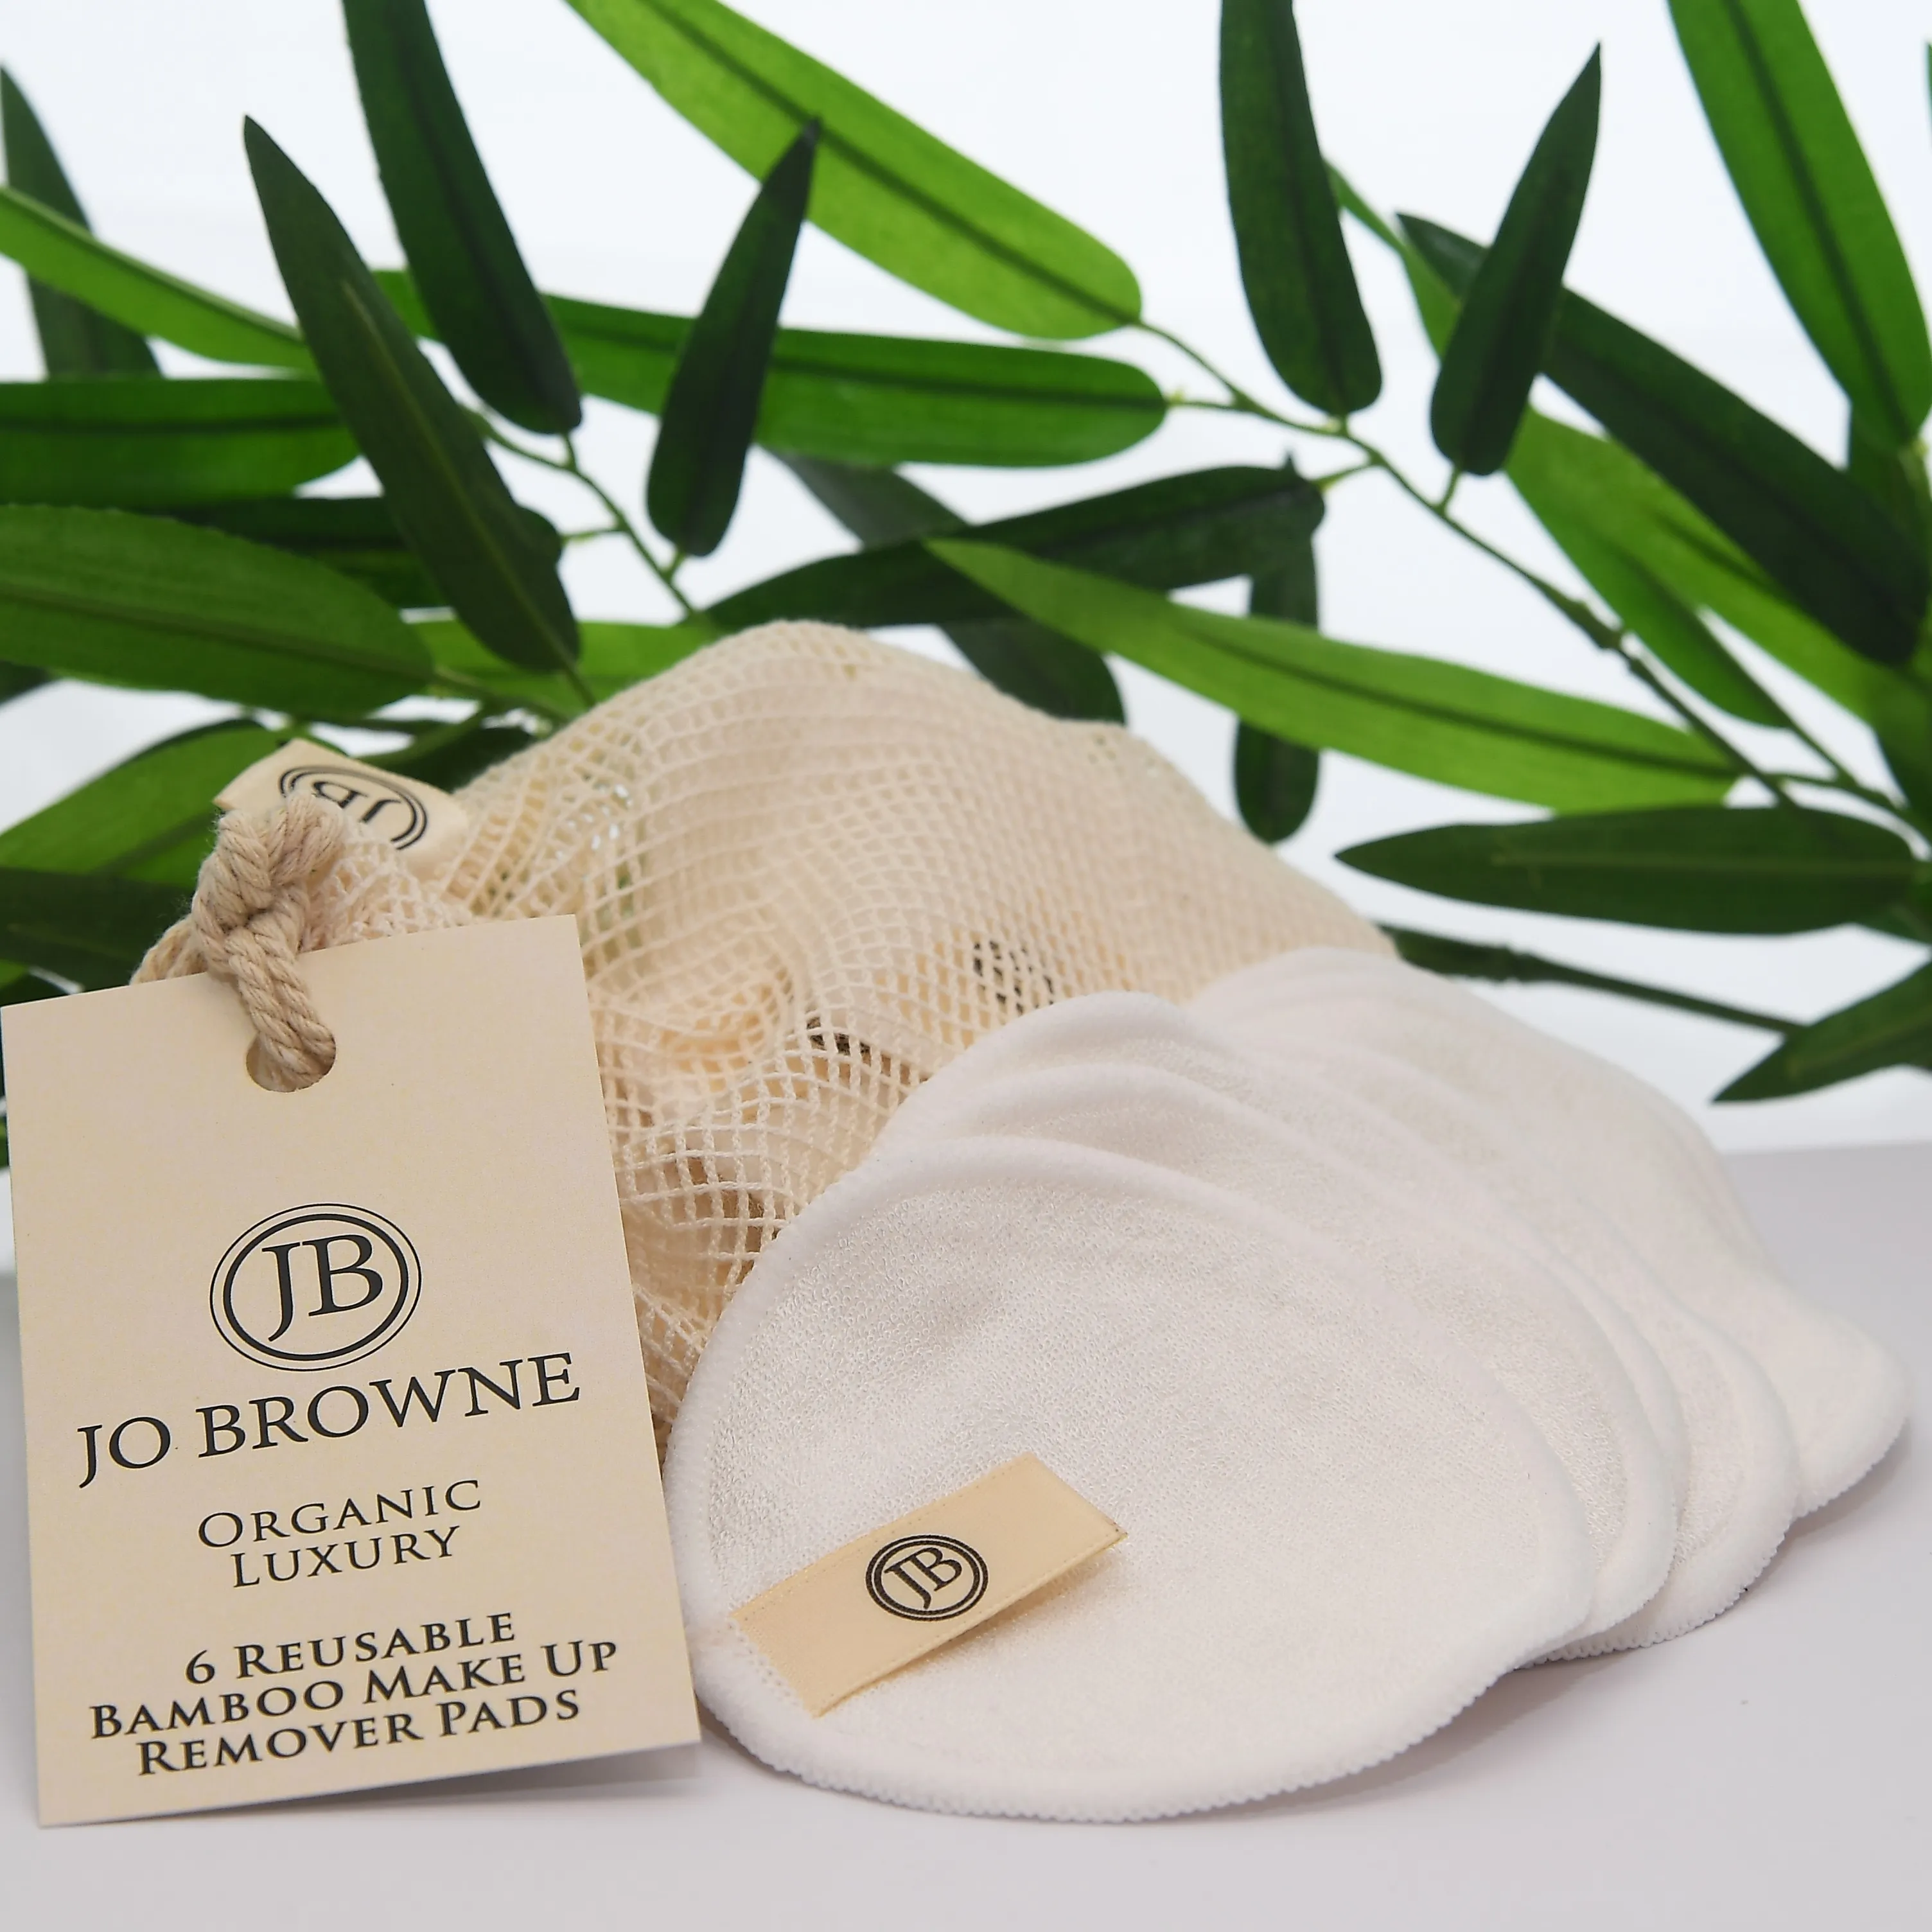 Reusable Bamboo Makeup Remover Pads | Jo Browne